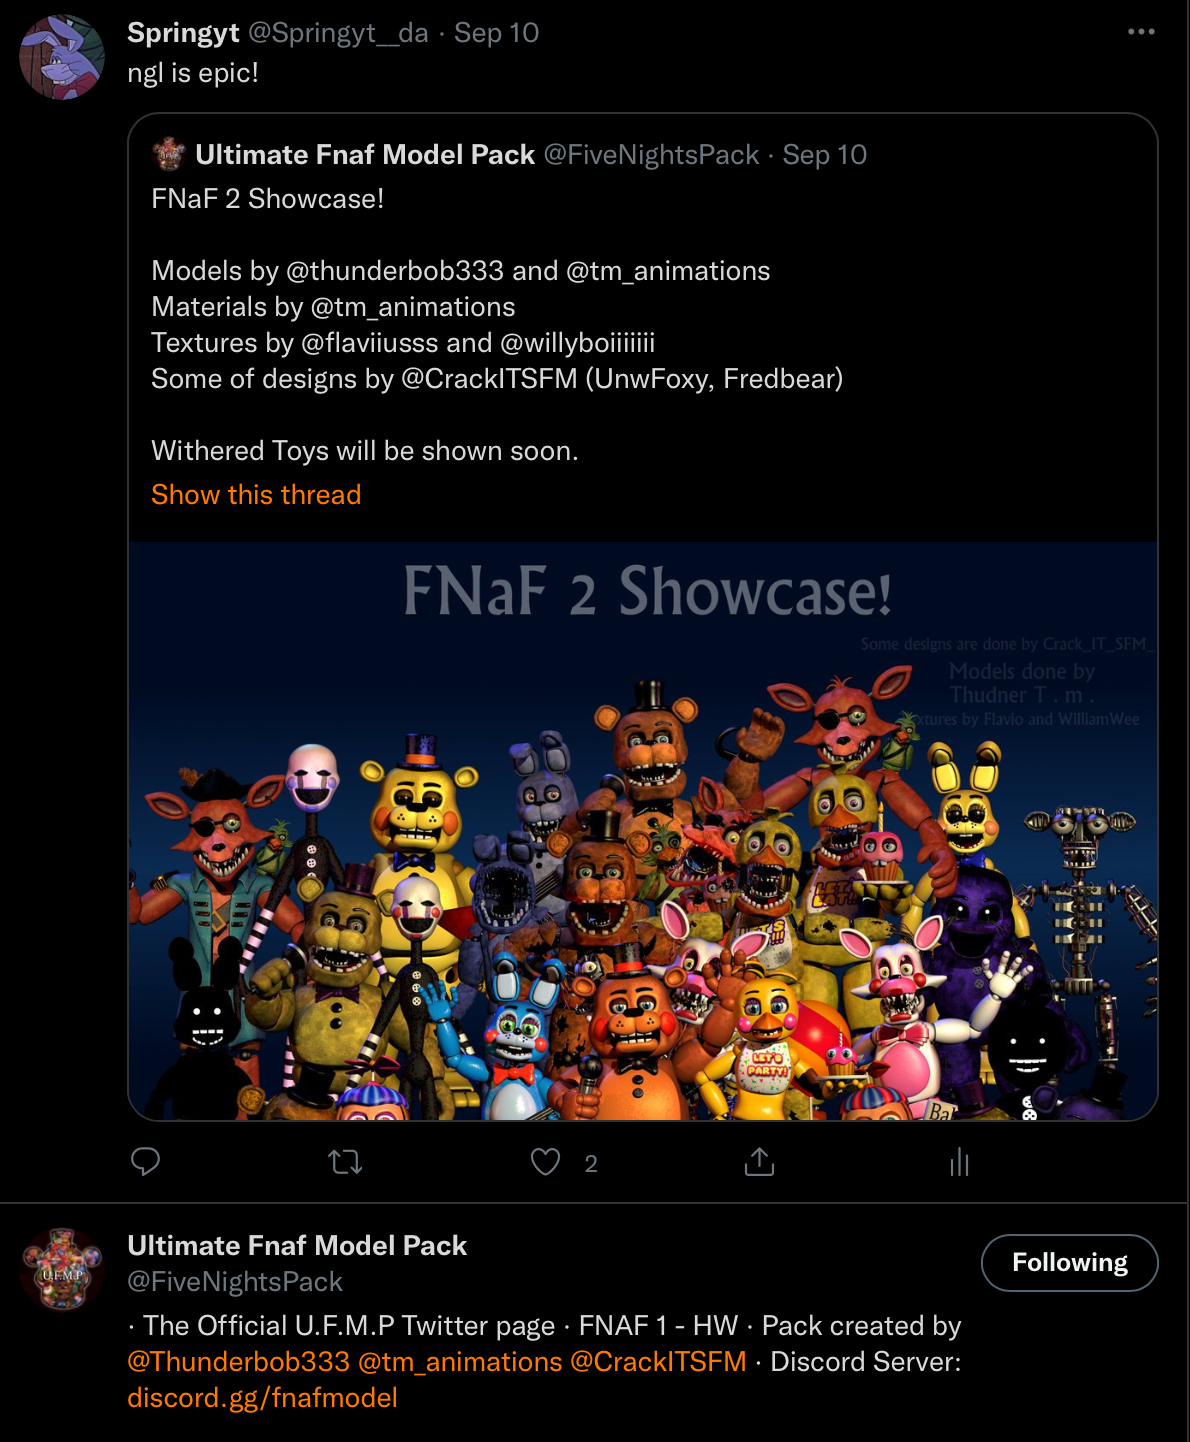 Ultimate FNaF Model Pack on X: Fredrick #FNAF #UFMP #FNaFArt